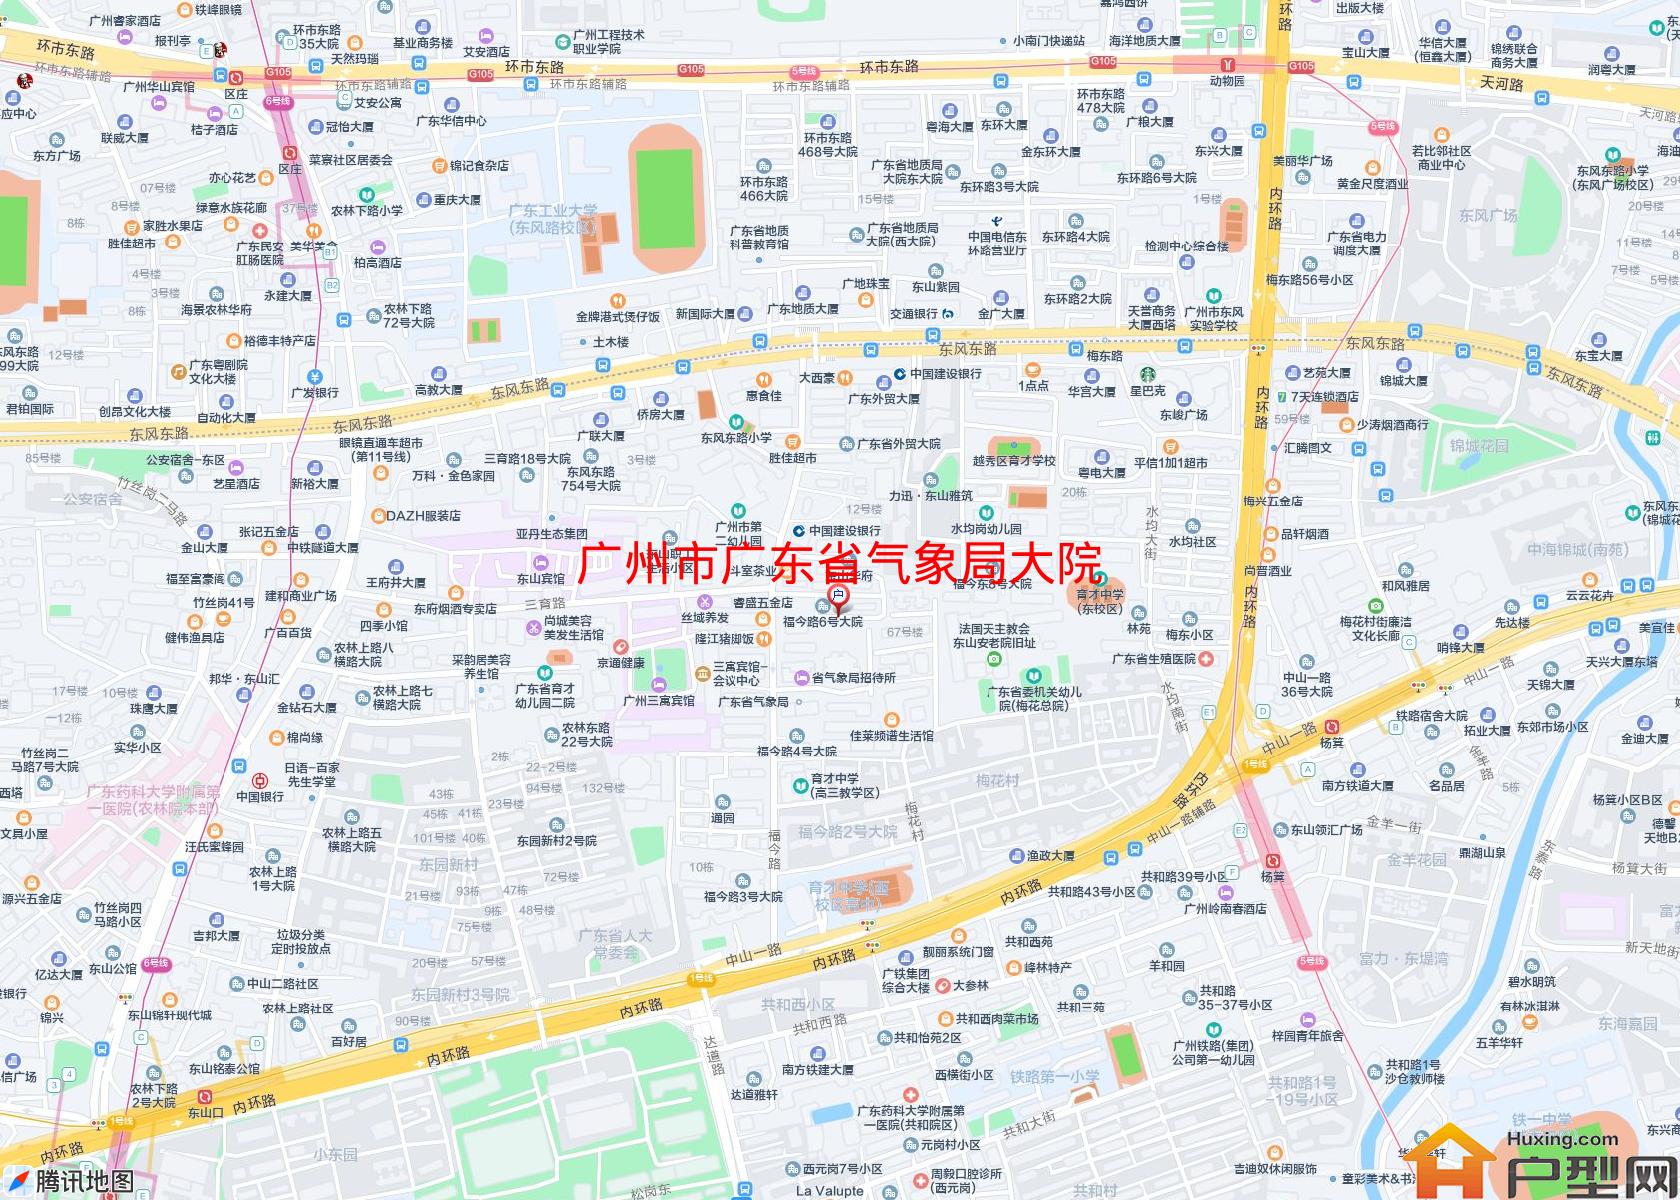 广东省气象局大院小区 - 户型网